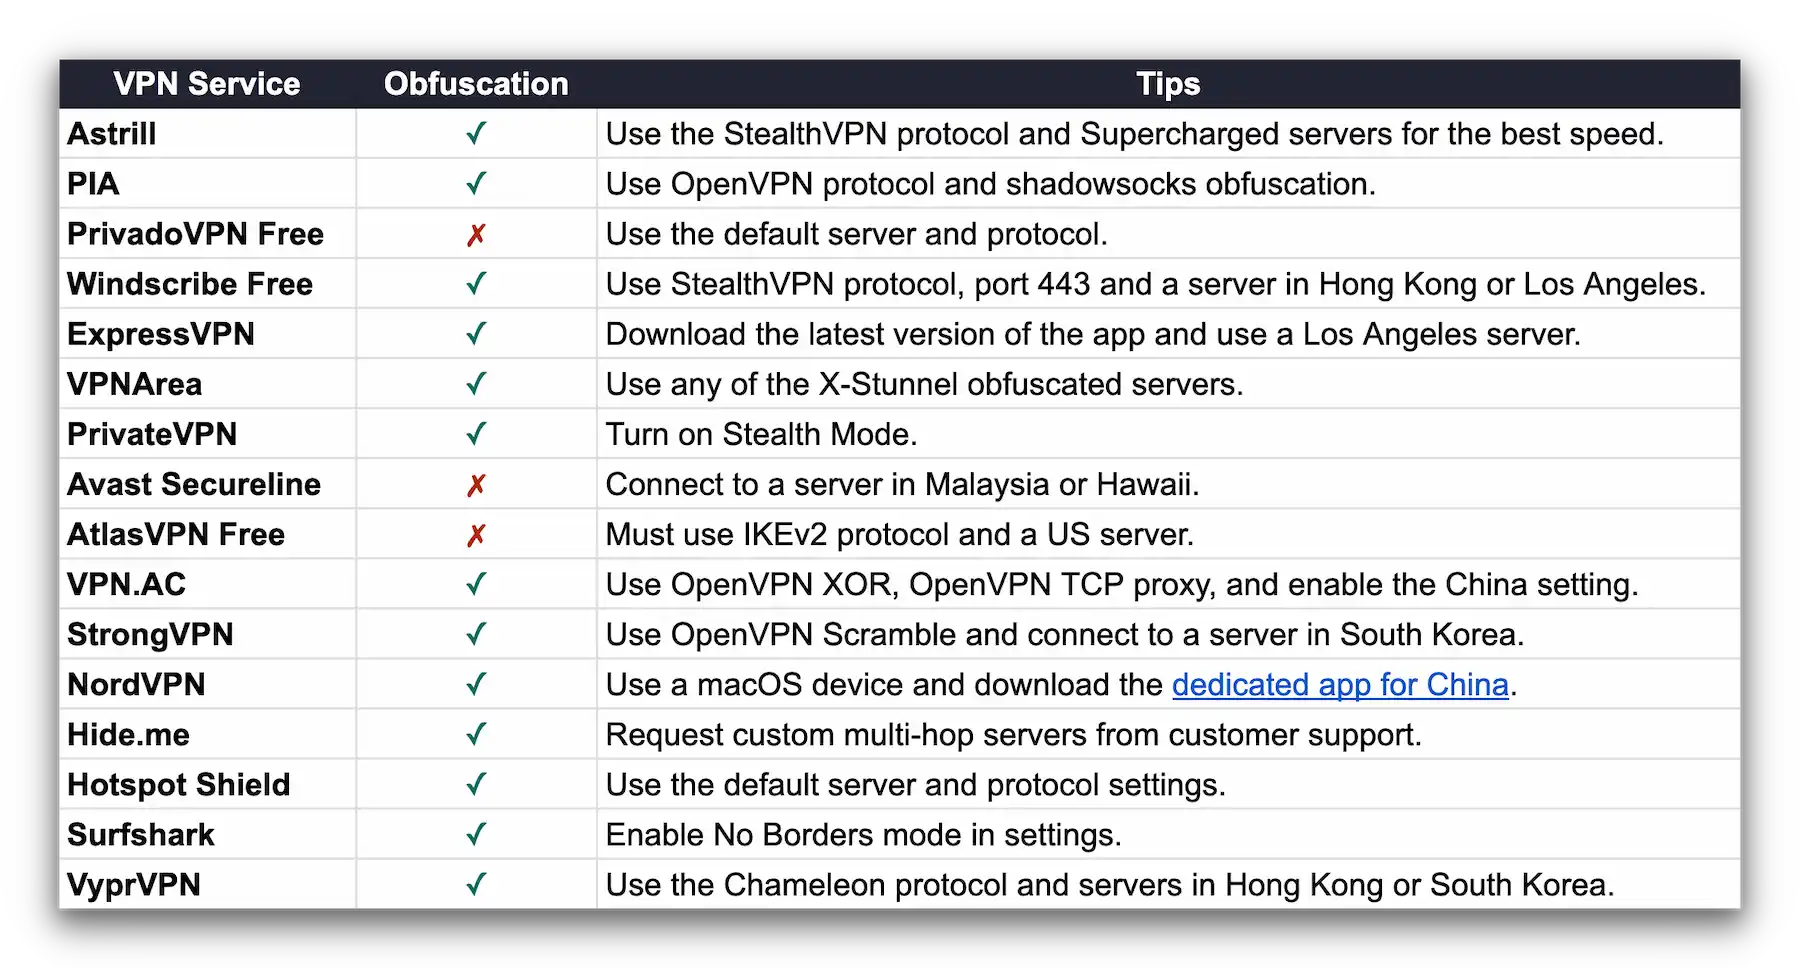 Base de datos que muestra qué VPN tienen tecnología de ofuscación y cómo habilitarla.